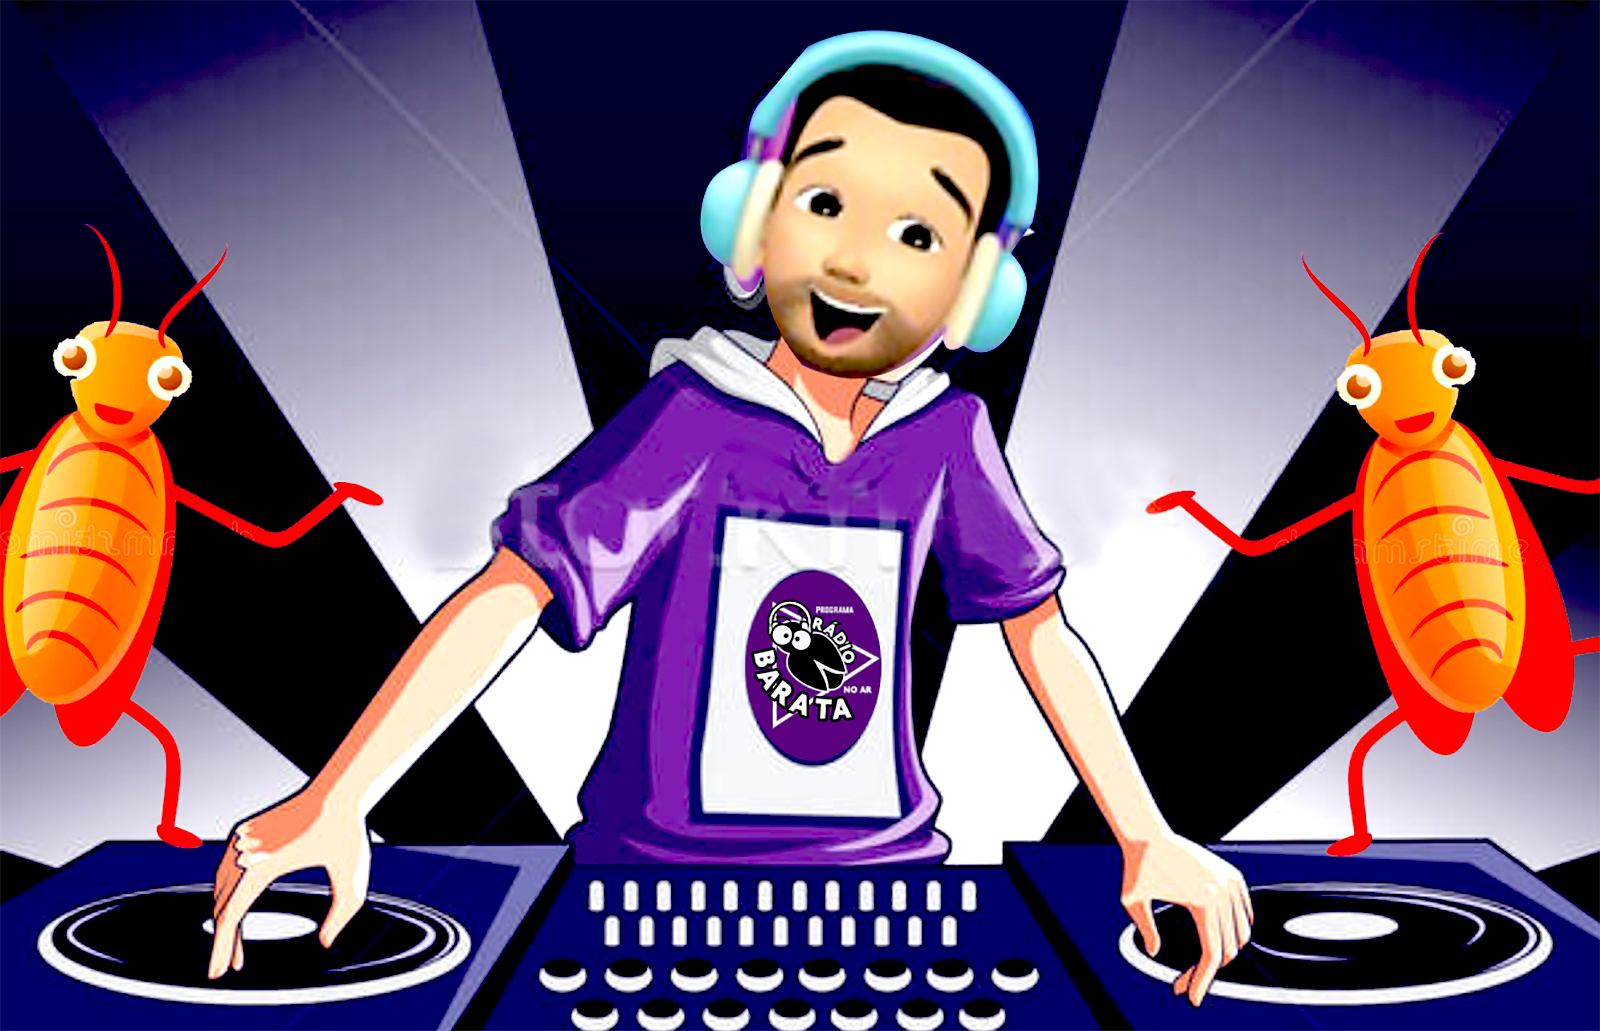 DJ Barata